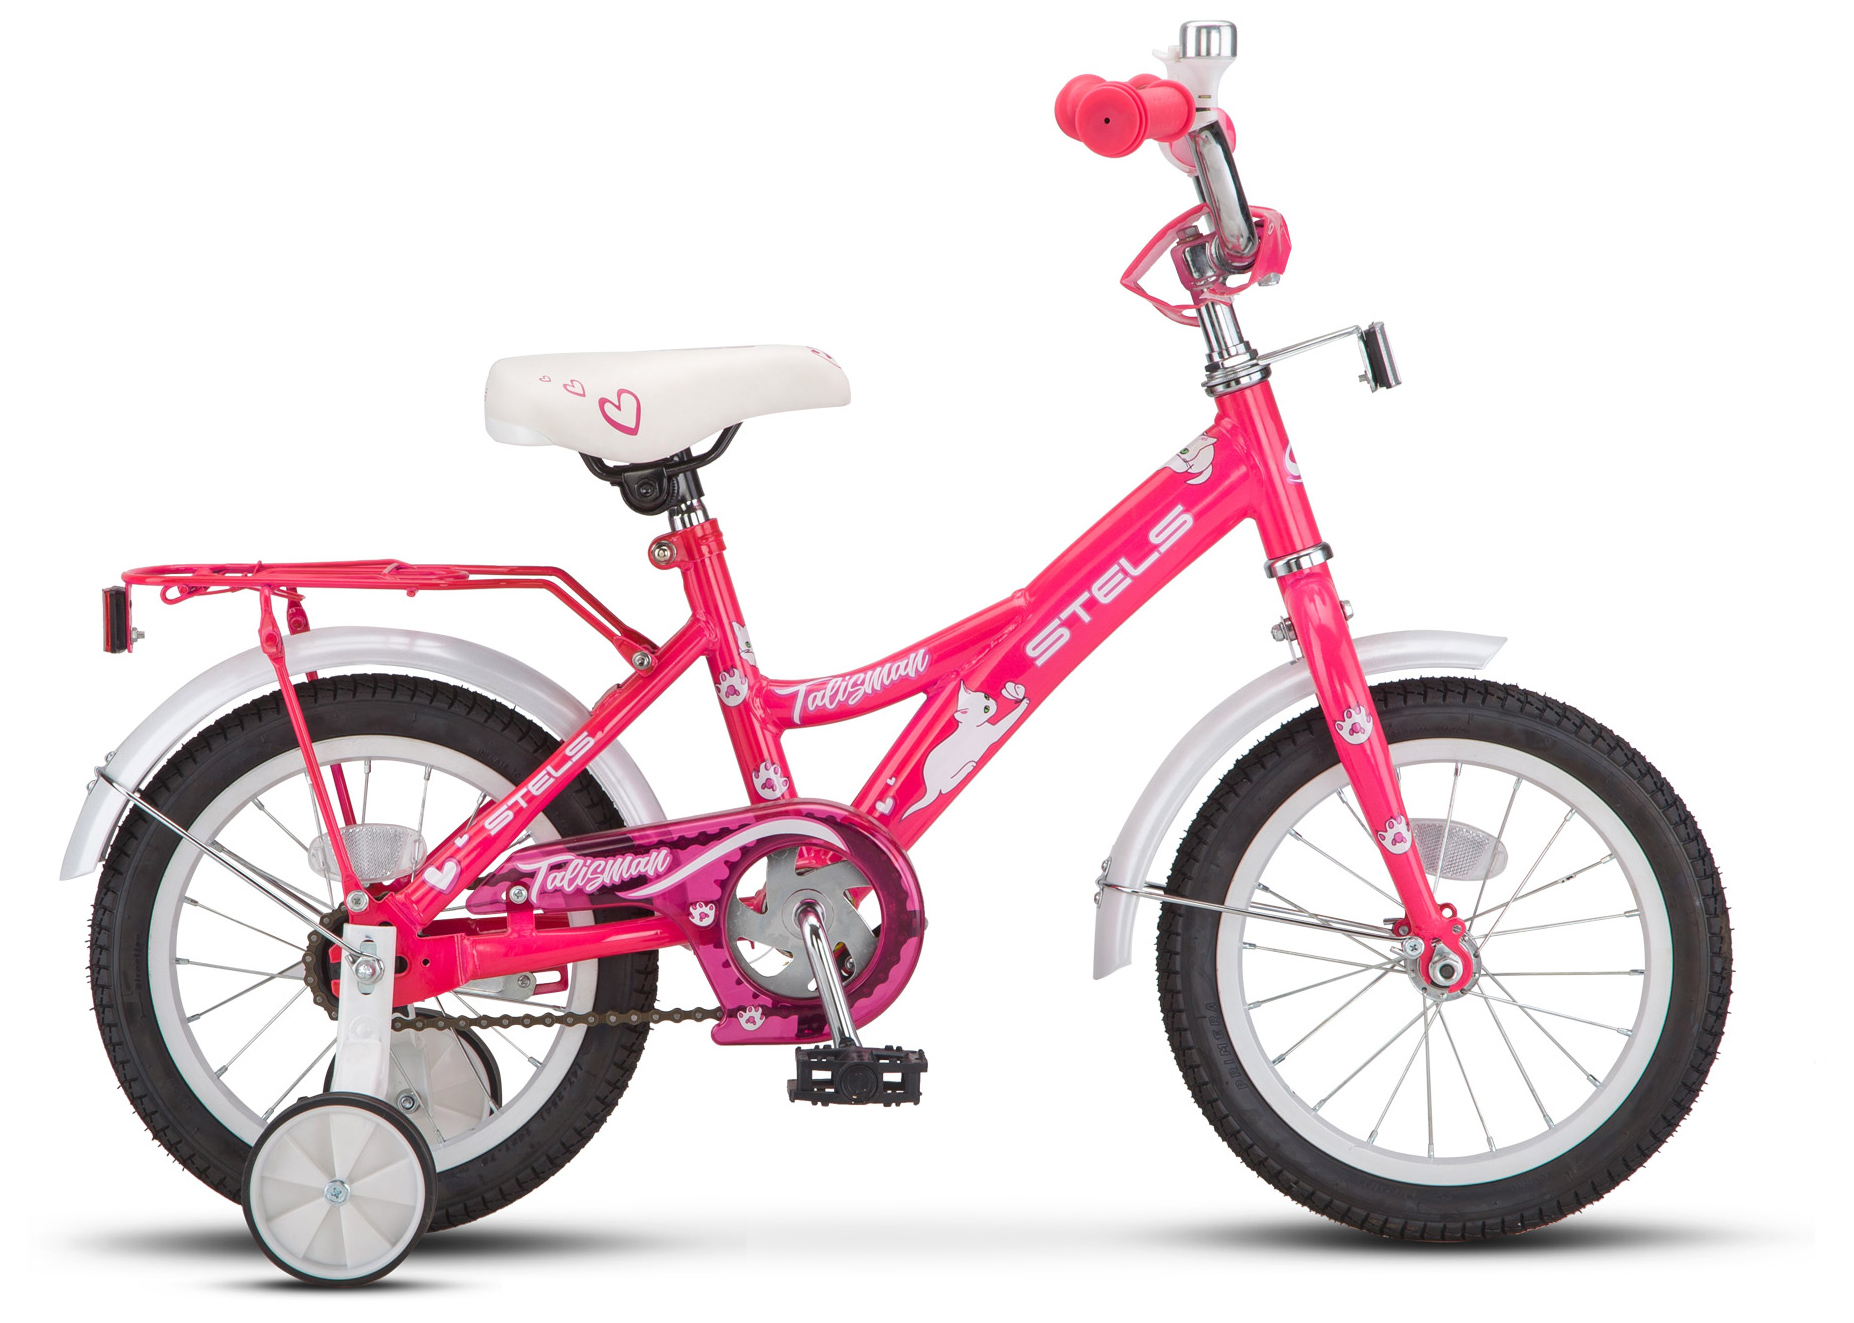  Отзывы о Трехколесный детский велосипед Stels Talisman Lady 14 Z010 2019